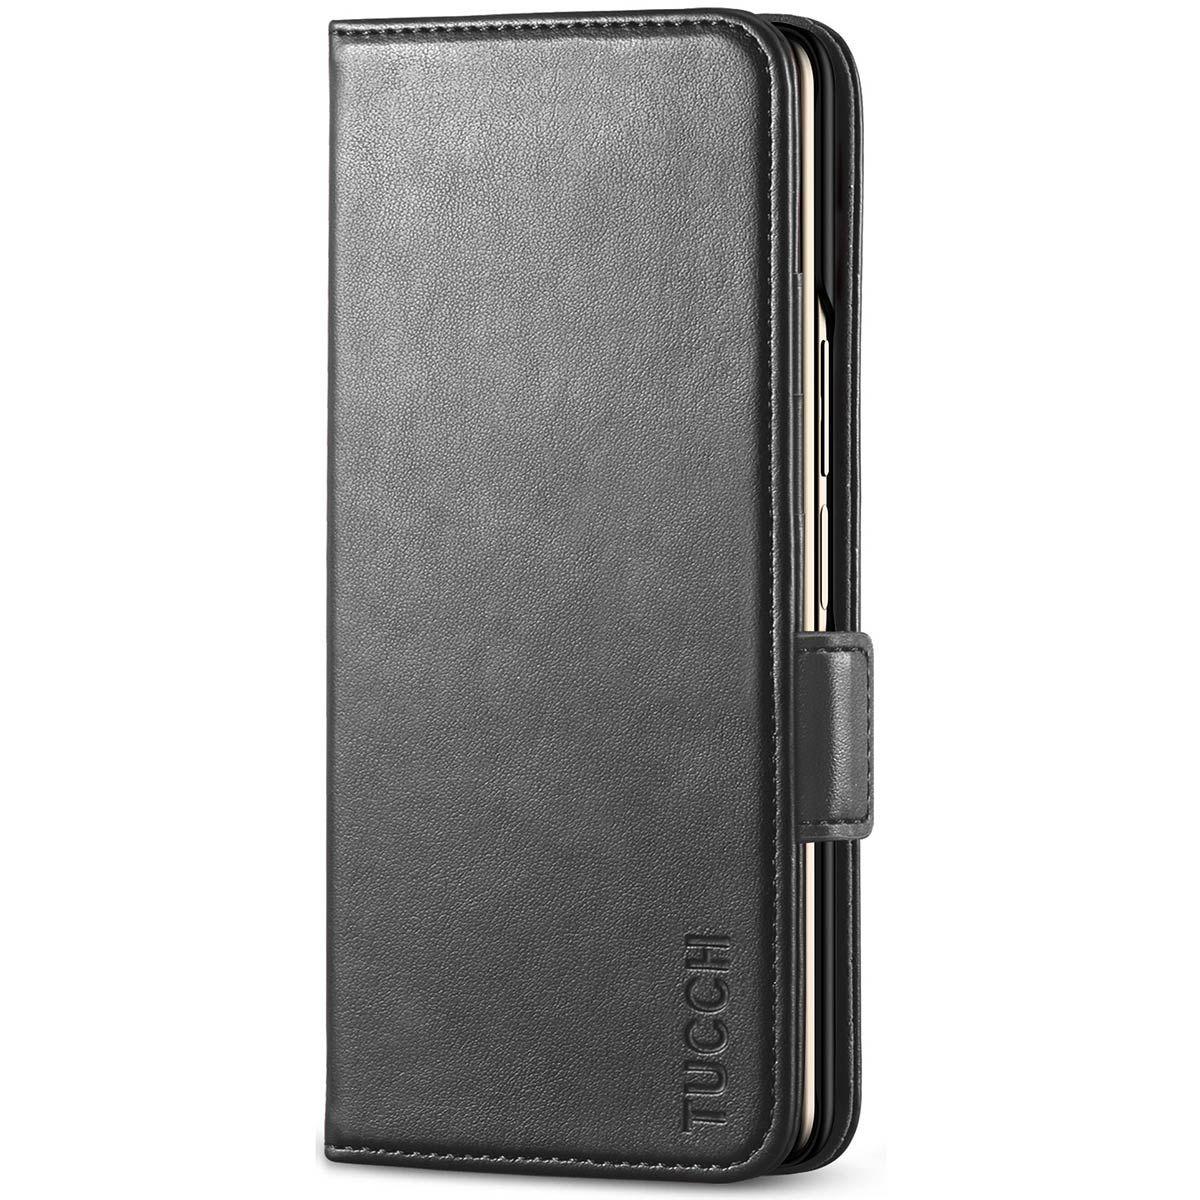  Flip Wallet Case Compatible with Samsung Galaxy Z Flip